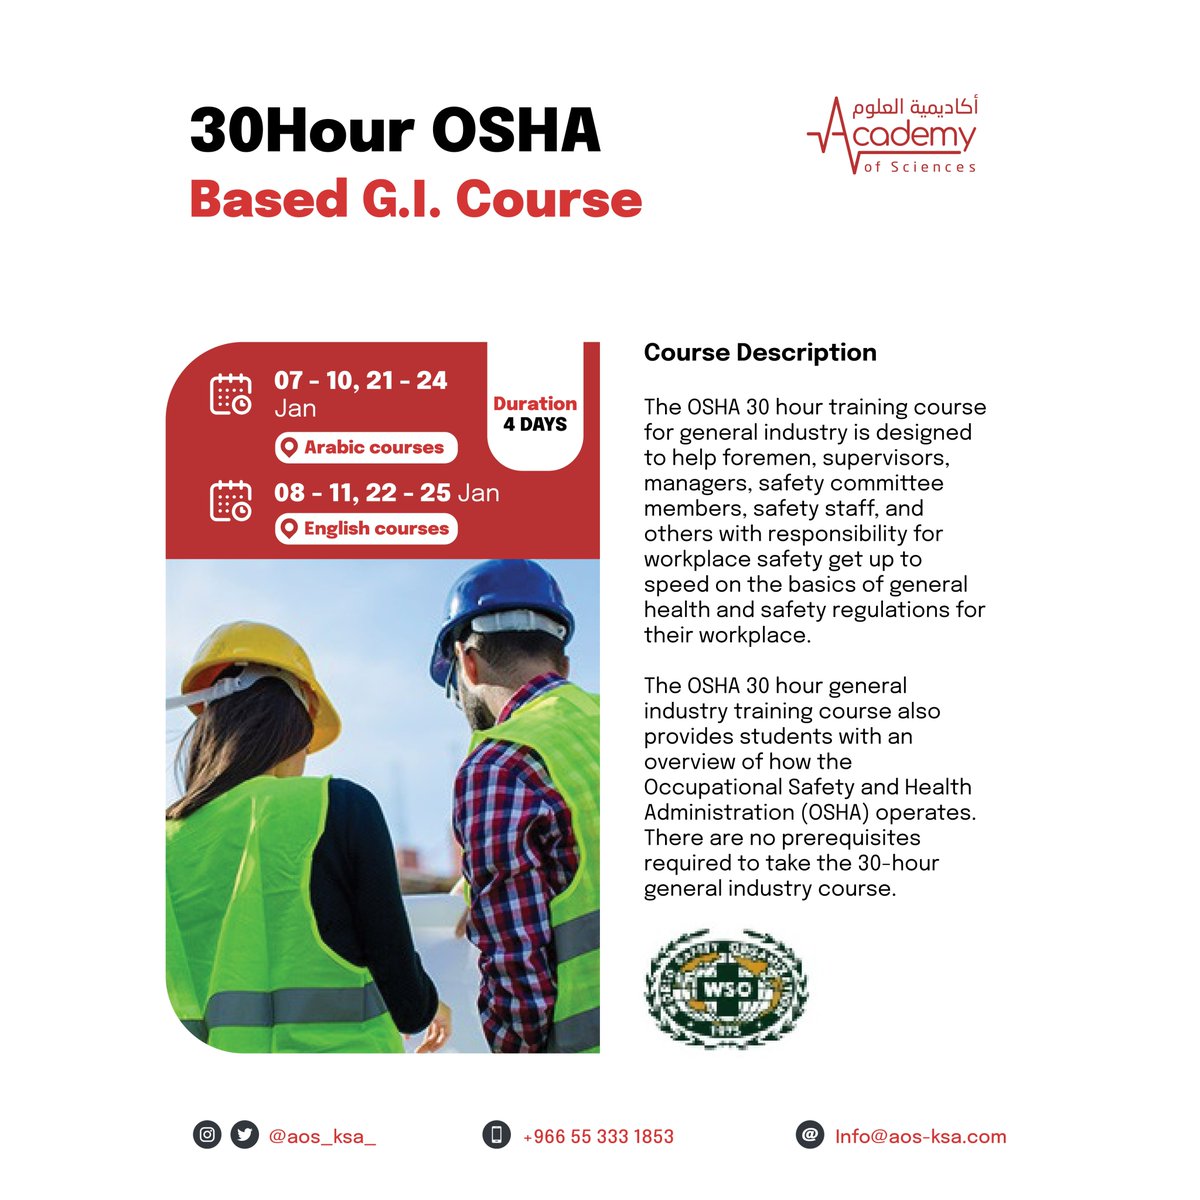 يسعدنا انضمامكم إلينا في دورات #الاوشا السلامة والصحة المهنية، بشهادات معتمدة من منظمة السلامة العالمية، والتي تقدم باللغة العربية والإنجليزية.

10Hours #OSHA Course 
aos-ksa.com/en/course/95

30Hours #OSHA Course
aos-ksa.com/en/course/96

#اكاديمية_العلوم
#Academy_of_sciences